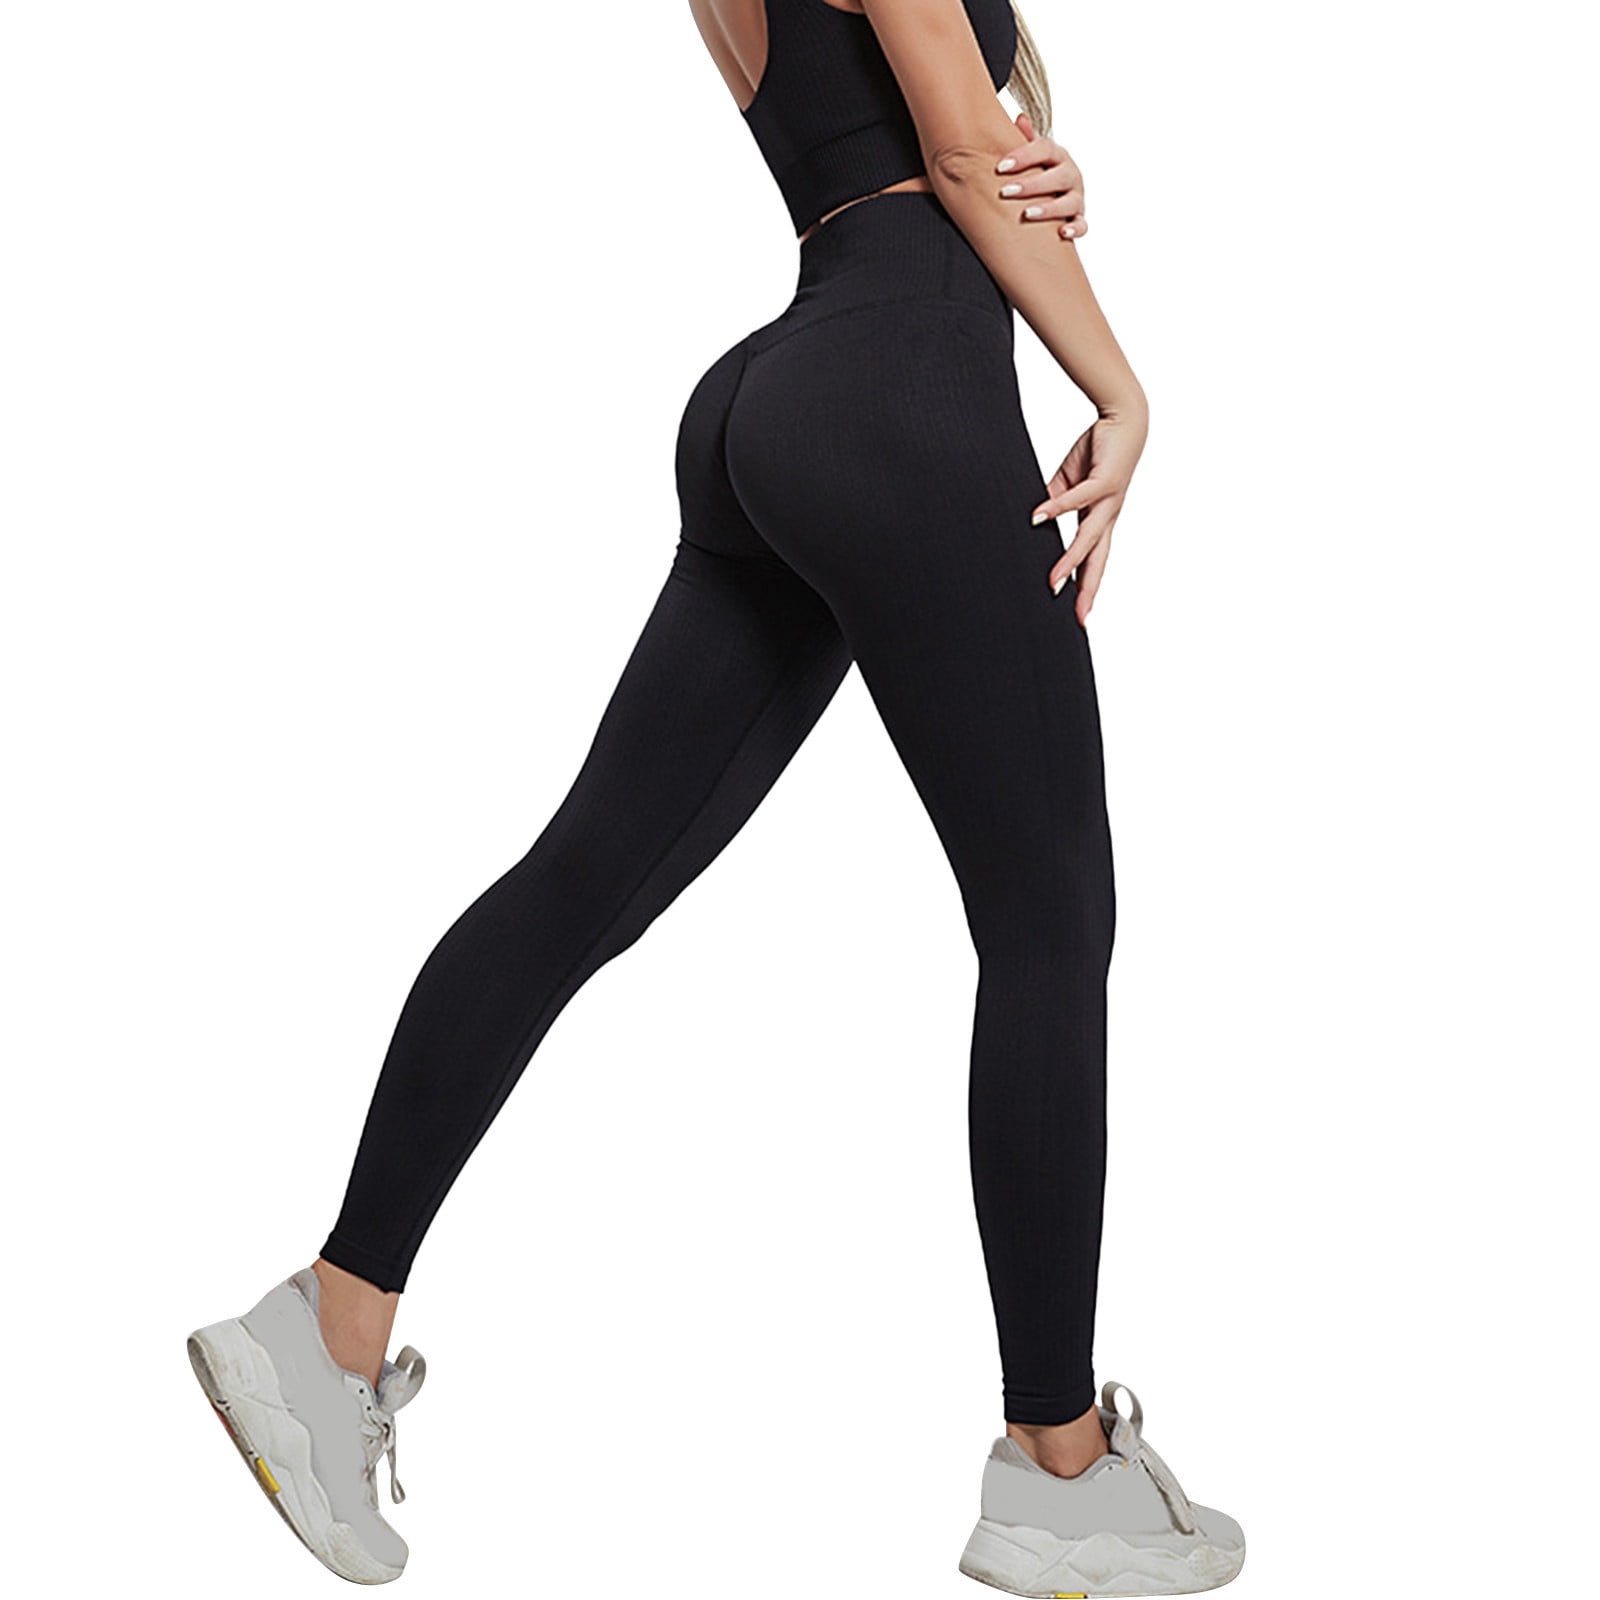 Aayomet Yoga Pants For Women Bootcut Women's Mesh Yoga Pants with